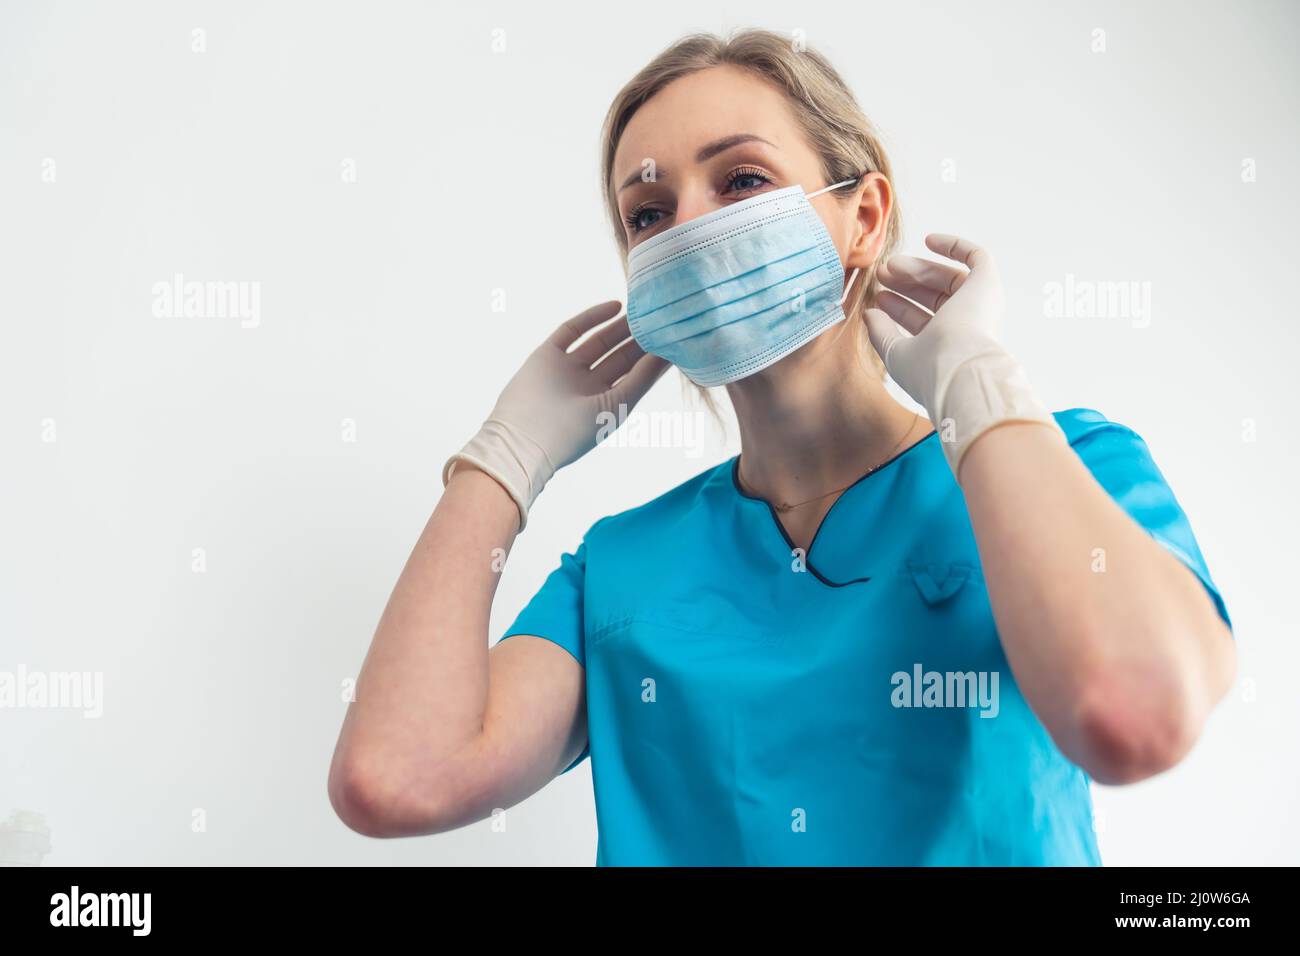 Il giovane caregiver biondo mostra come rimuovere in modo sicuro la maschera chirurgica. Foto di alta qualità Foto Stock